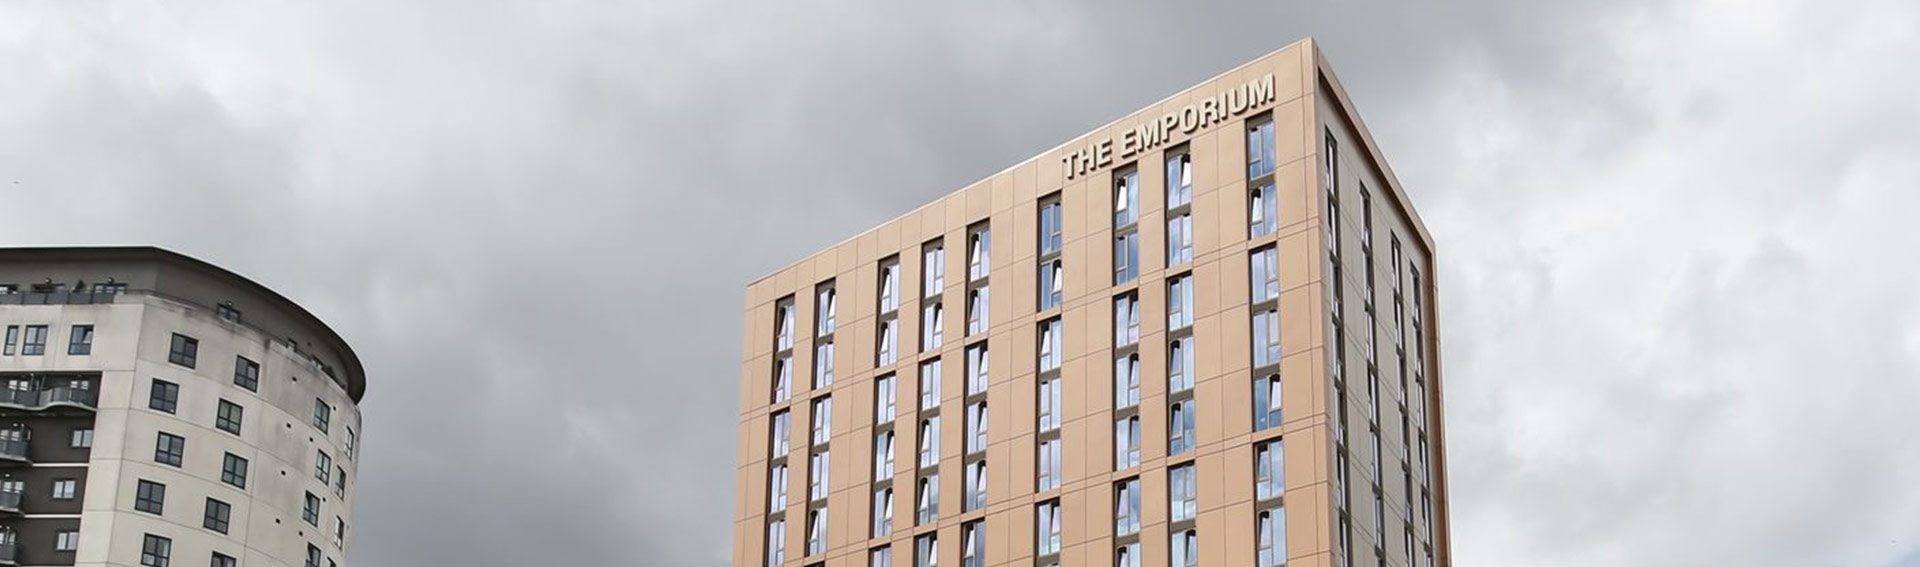 The Emporium Birmingham